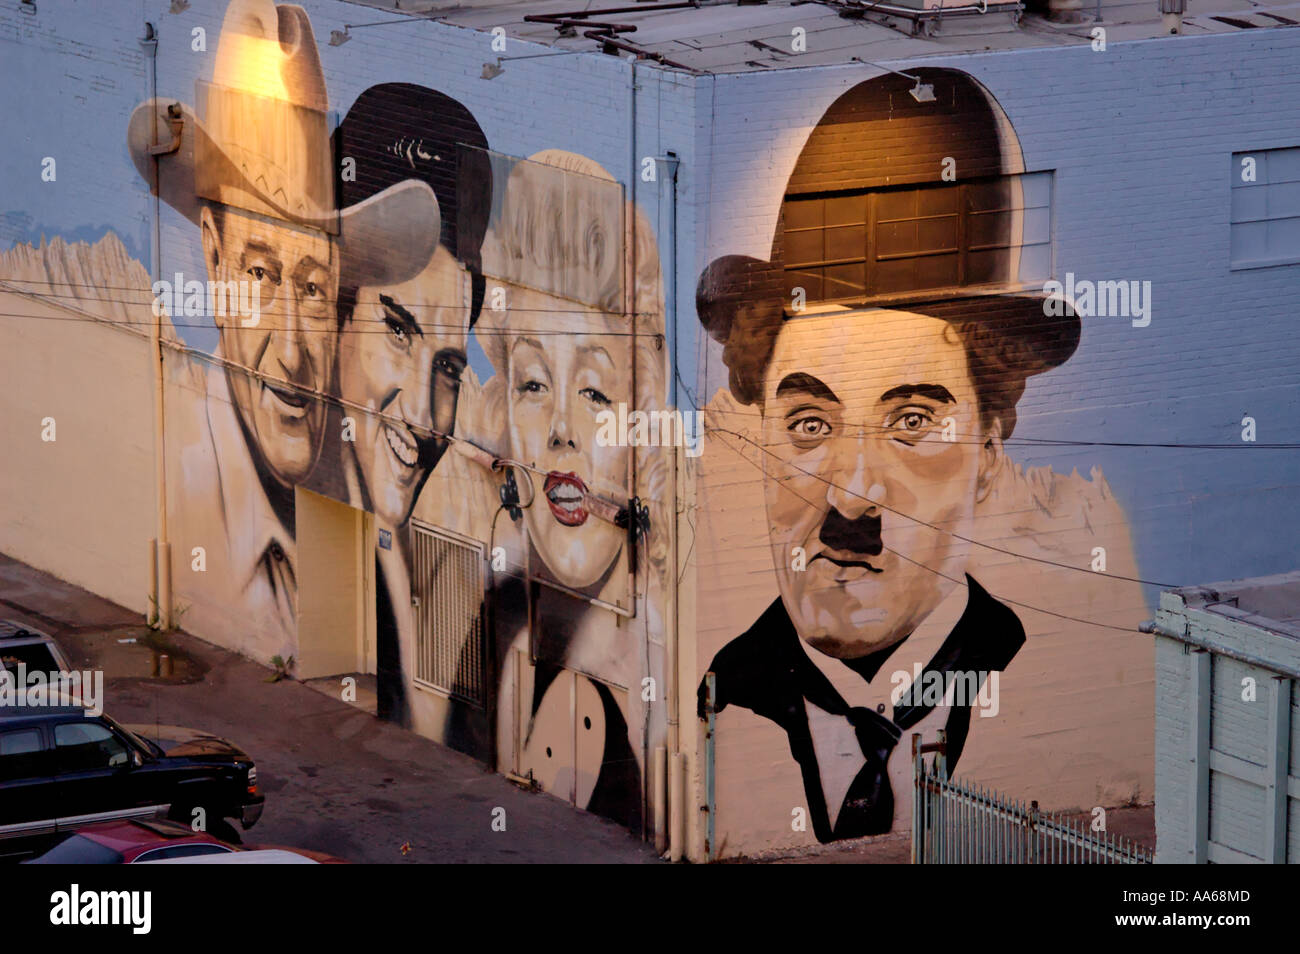 La fresque de quatre célébrités, dont John Wayne, Elvis Presley, Marilyn Monroe et Charlie Chaplain, peint sur un bâtiment à Hollywood, Californie, États-Unis Banque D'Images